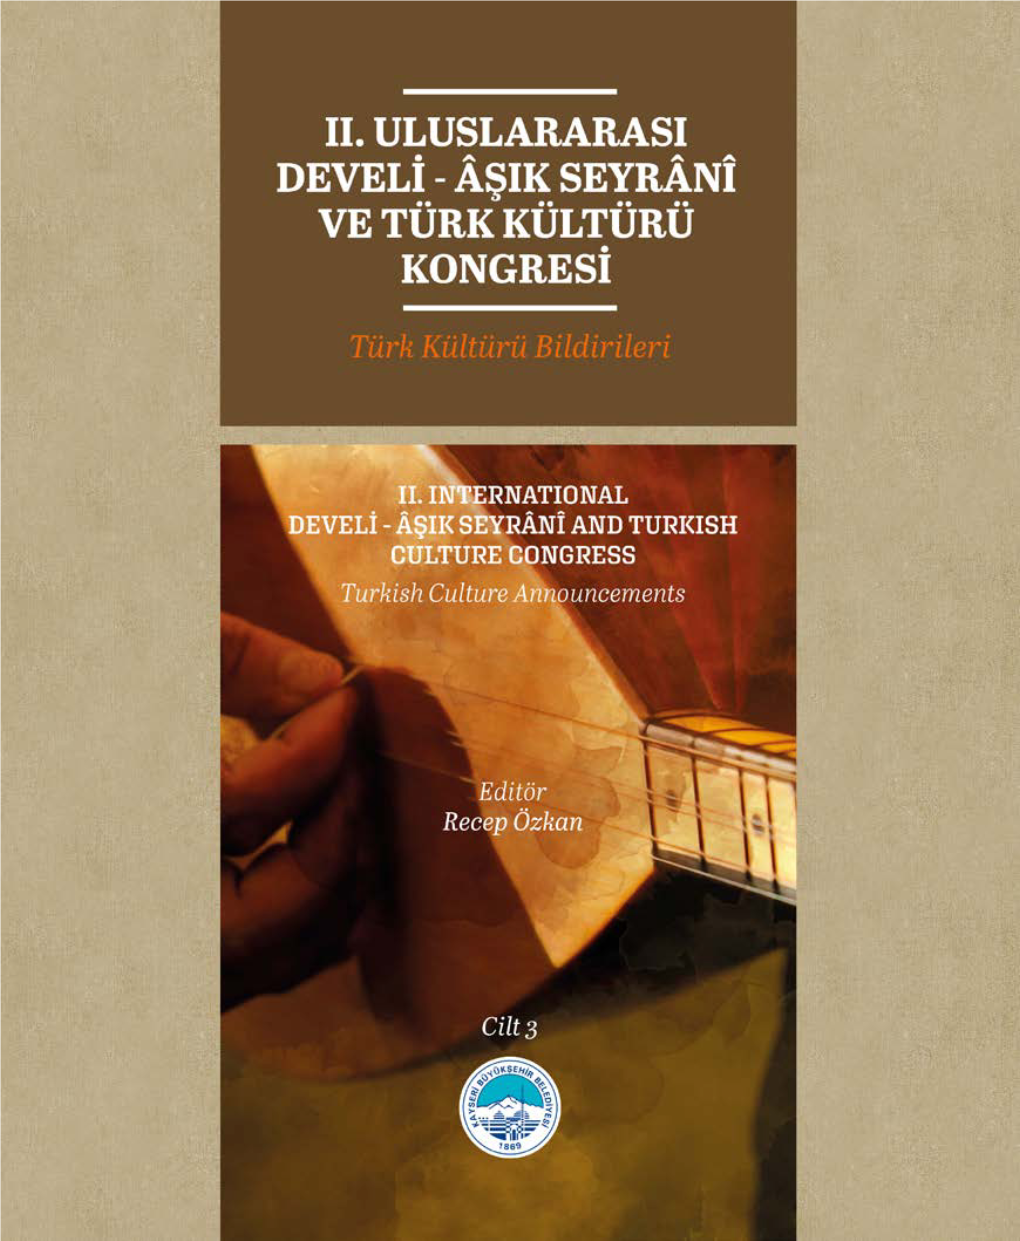 II. INTERNATIONAL DEVELİ - ÂŞIK SEYRÂNÎ and TURKISH CULTURE CONGRESS “Turkısh Culture Announcements”